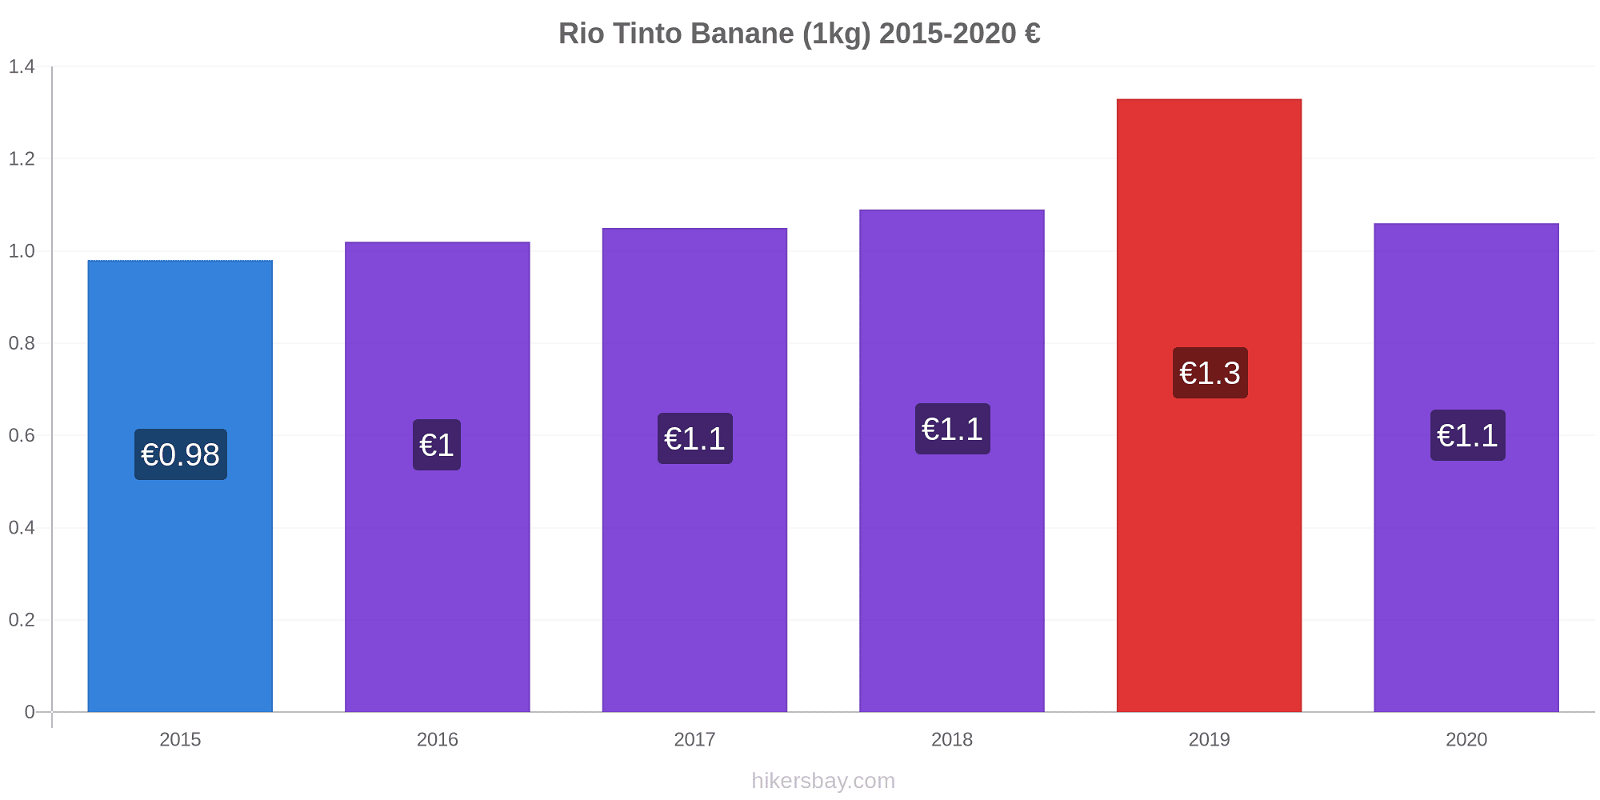 Rio Tinto variazioni di prezzo Banana (1kg) hikersbay.com